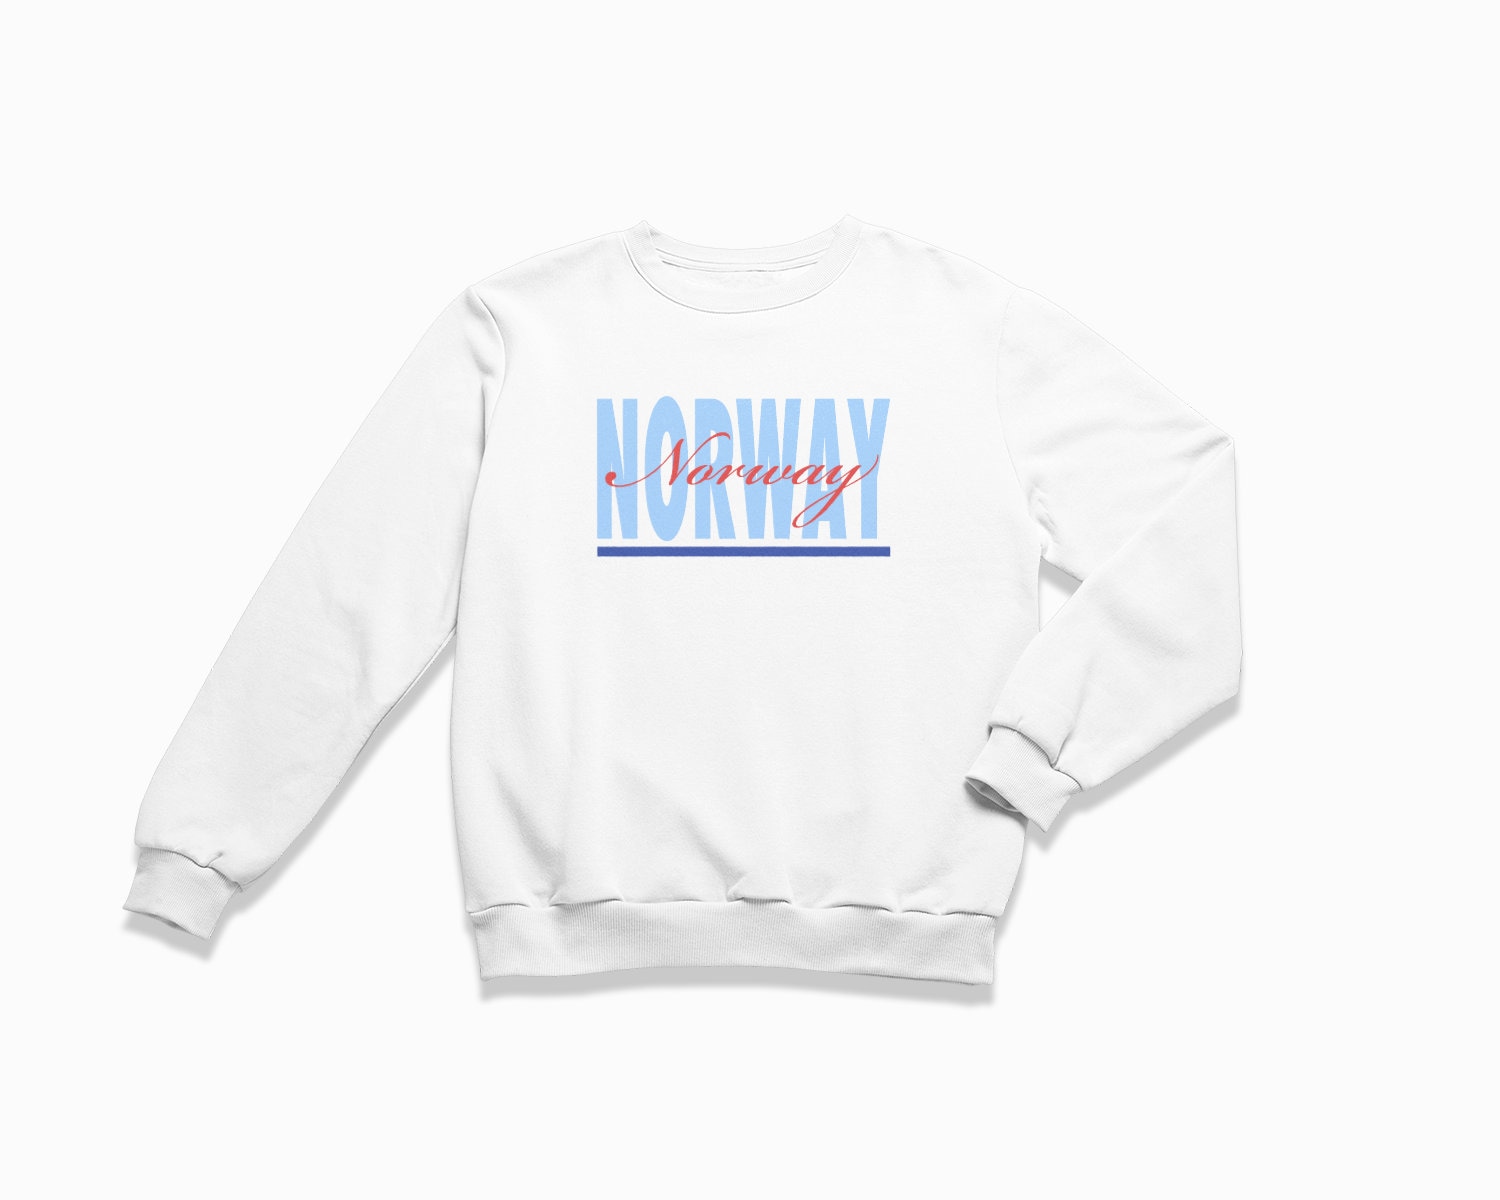 Norwegen Signature Sweatshirt Norway Crewneck/Retro Style Sweatshirt Vintage Inspirierter Pullover von HappyNewVintageShop